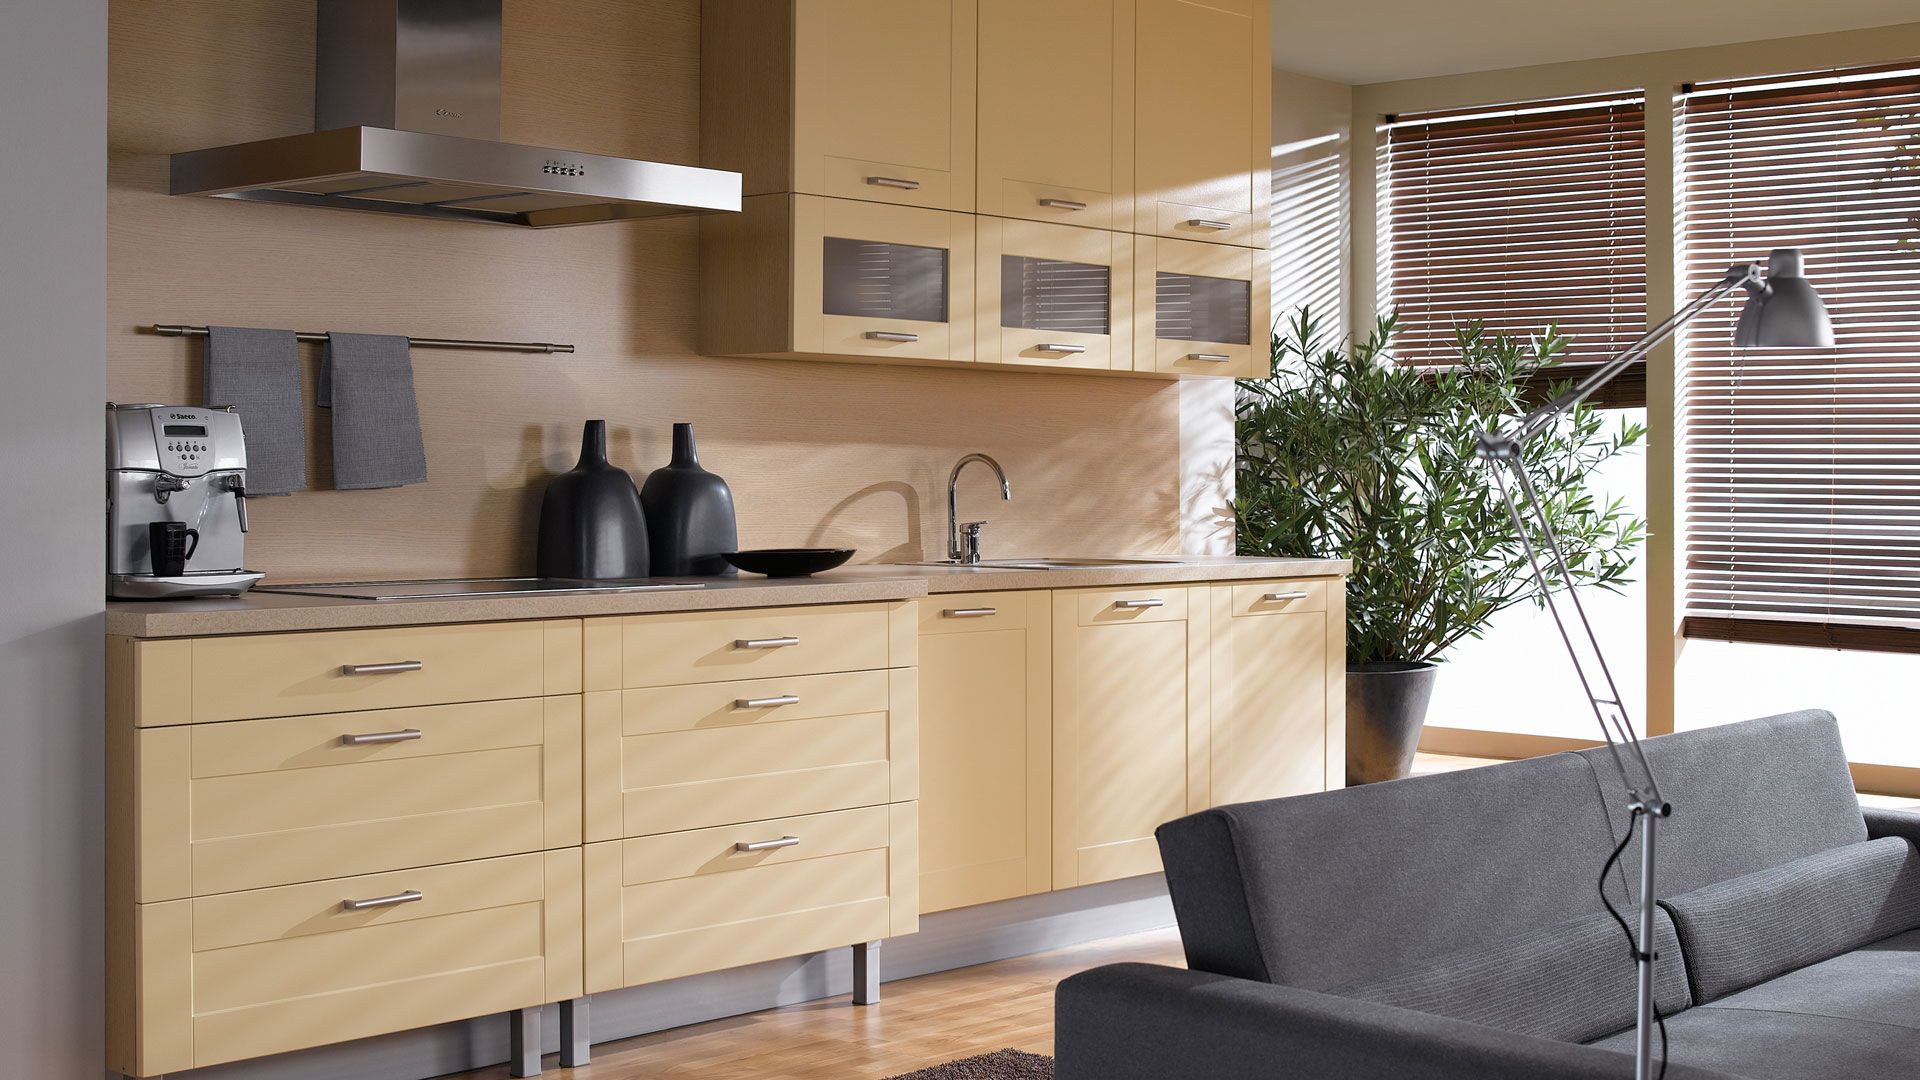 Na styku kuchni i salonu można ustawić funkcjonalny i praktyczny zestaw wypoczynkowy. Fot. Black Red White